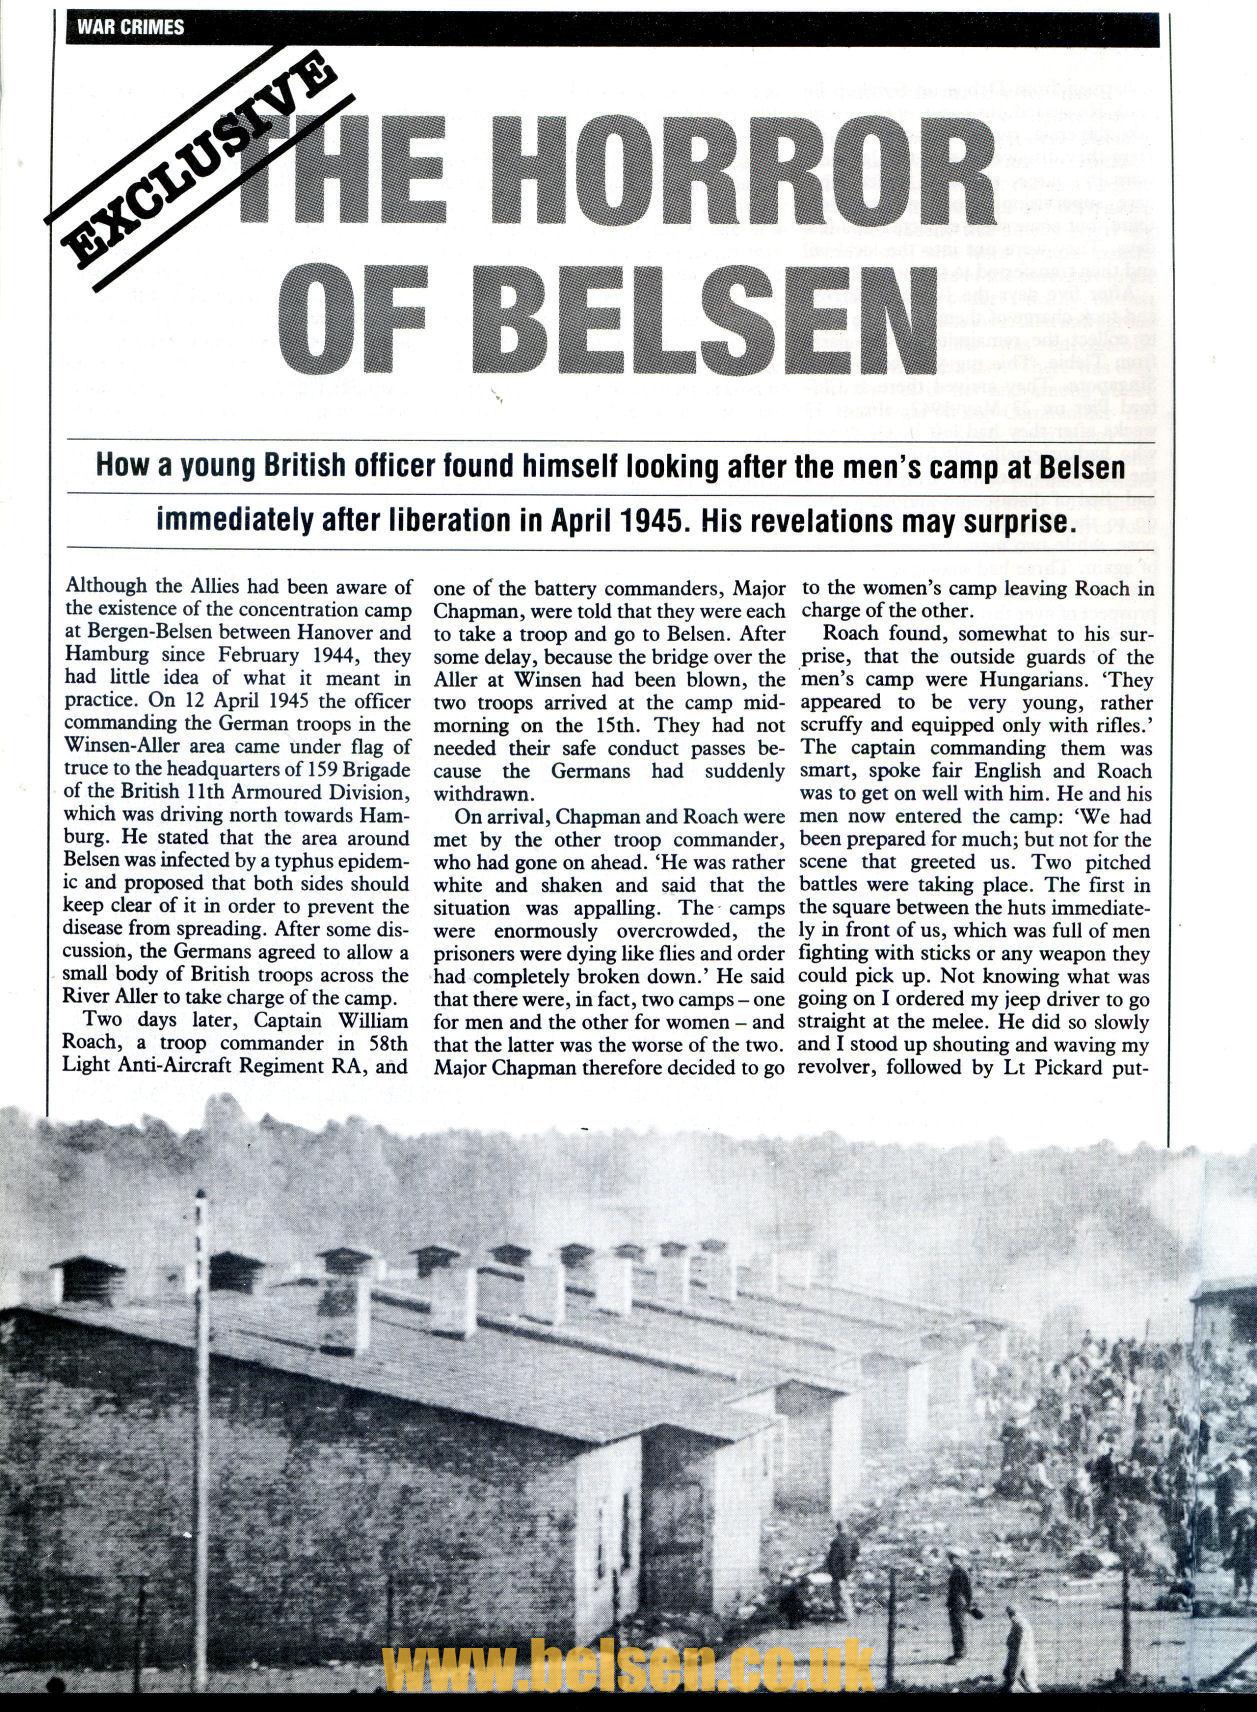 First Officer at Belsen